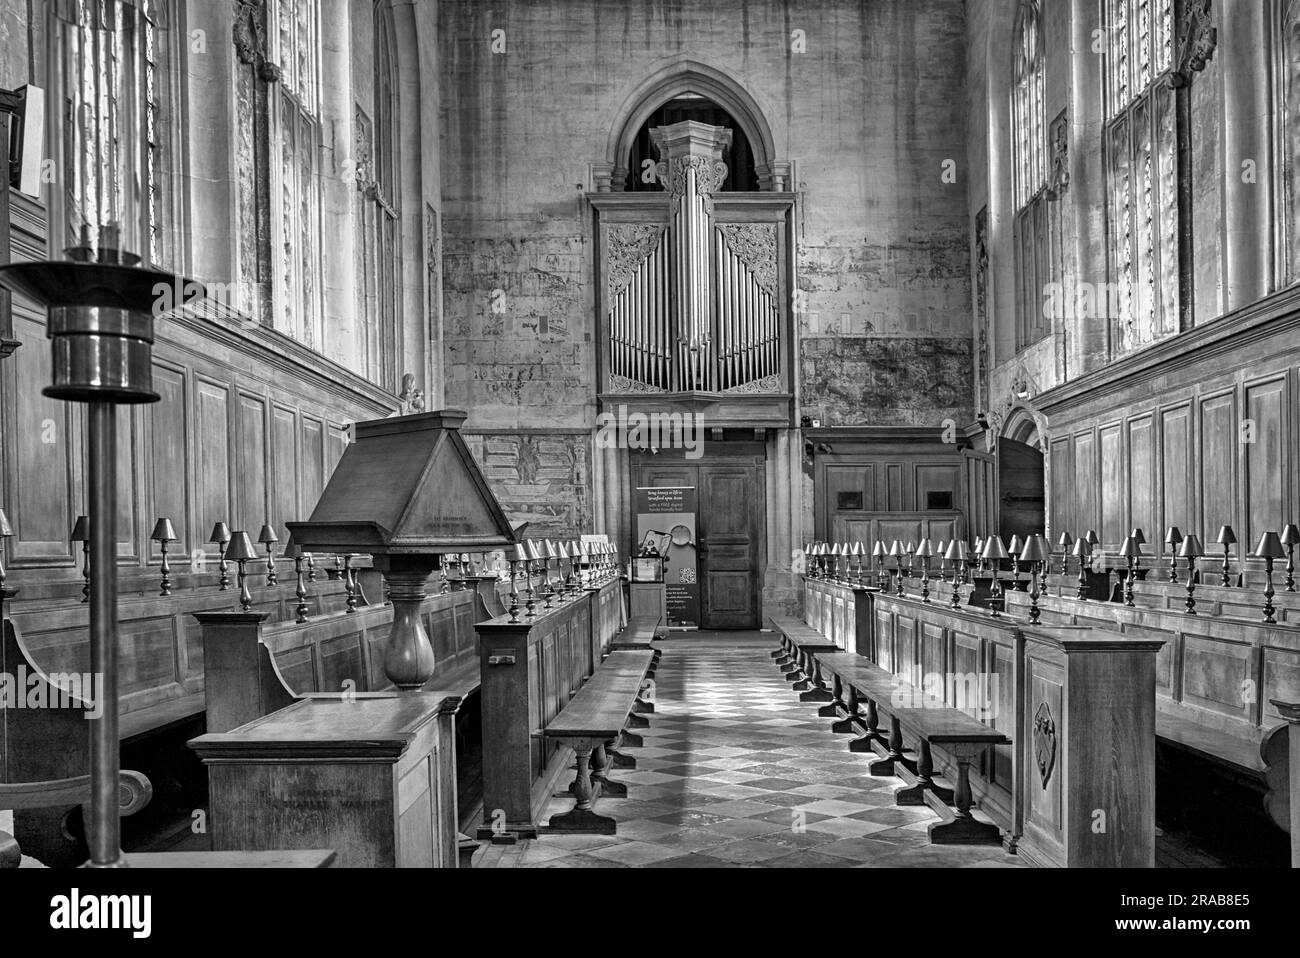 Interni della Guild Chapel Stratford Upon Avon, Inghilterra, Regno Unito. Fotografia in bianco e nero, Foto Stock